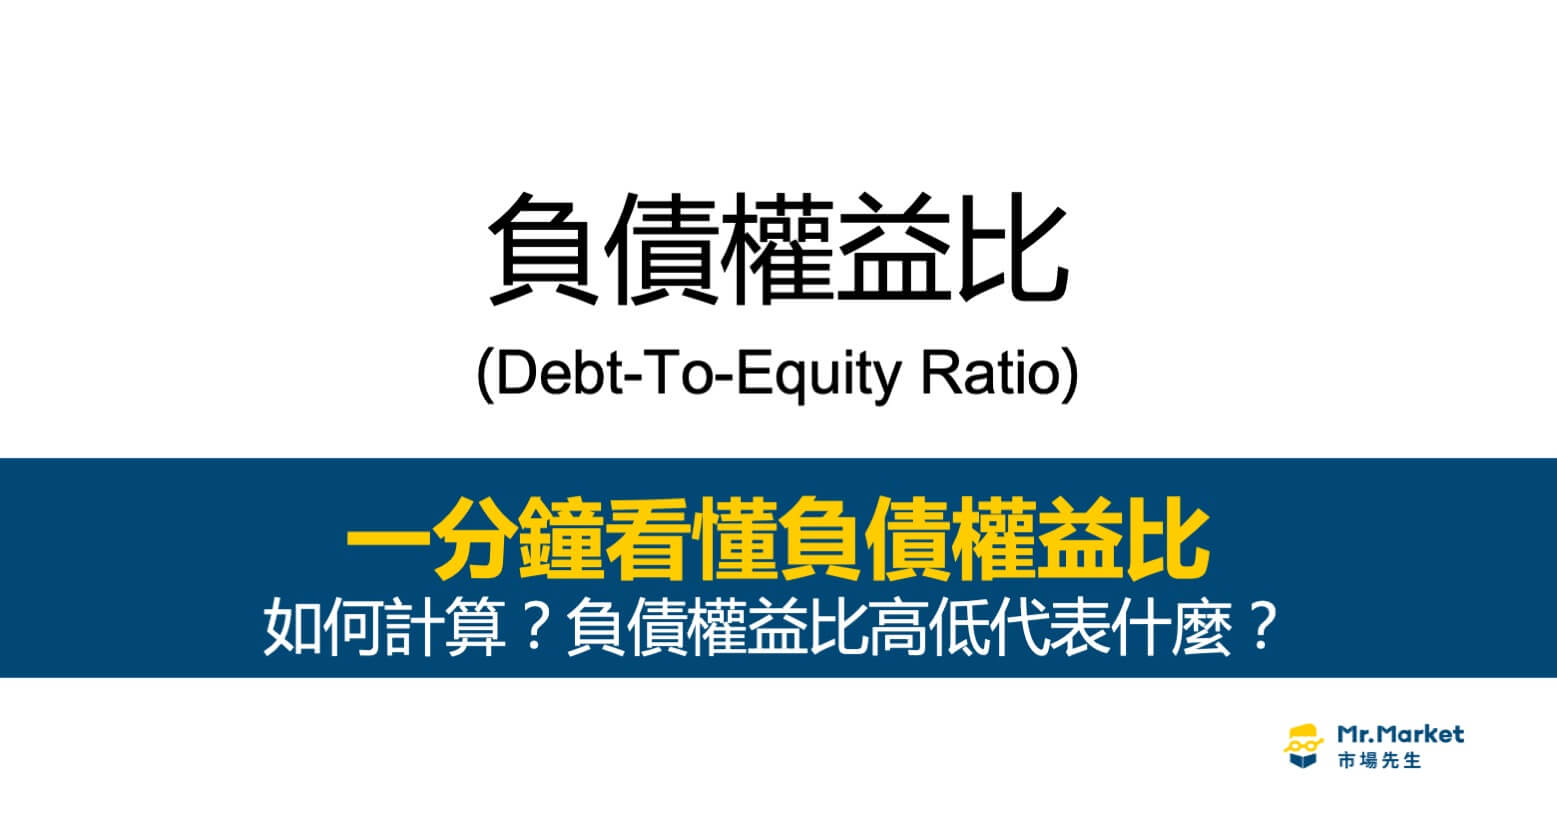 負債權益比(Debt-To-Equity Ratio)是什麼？負債越低真的越好嗎？如何查詢？